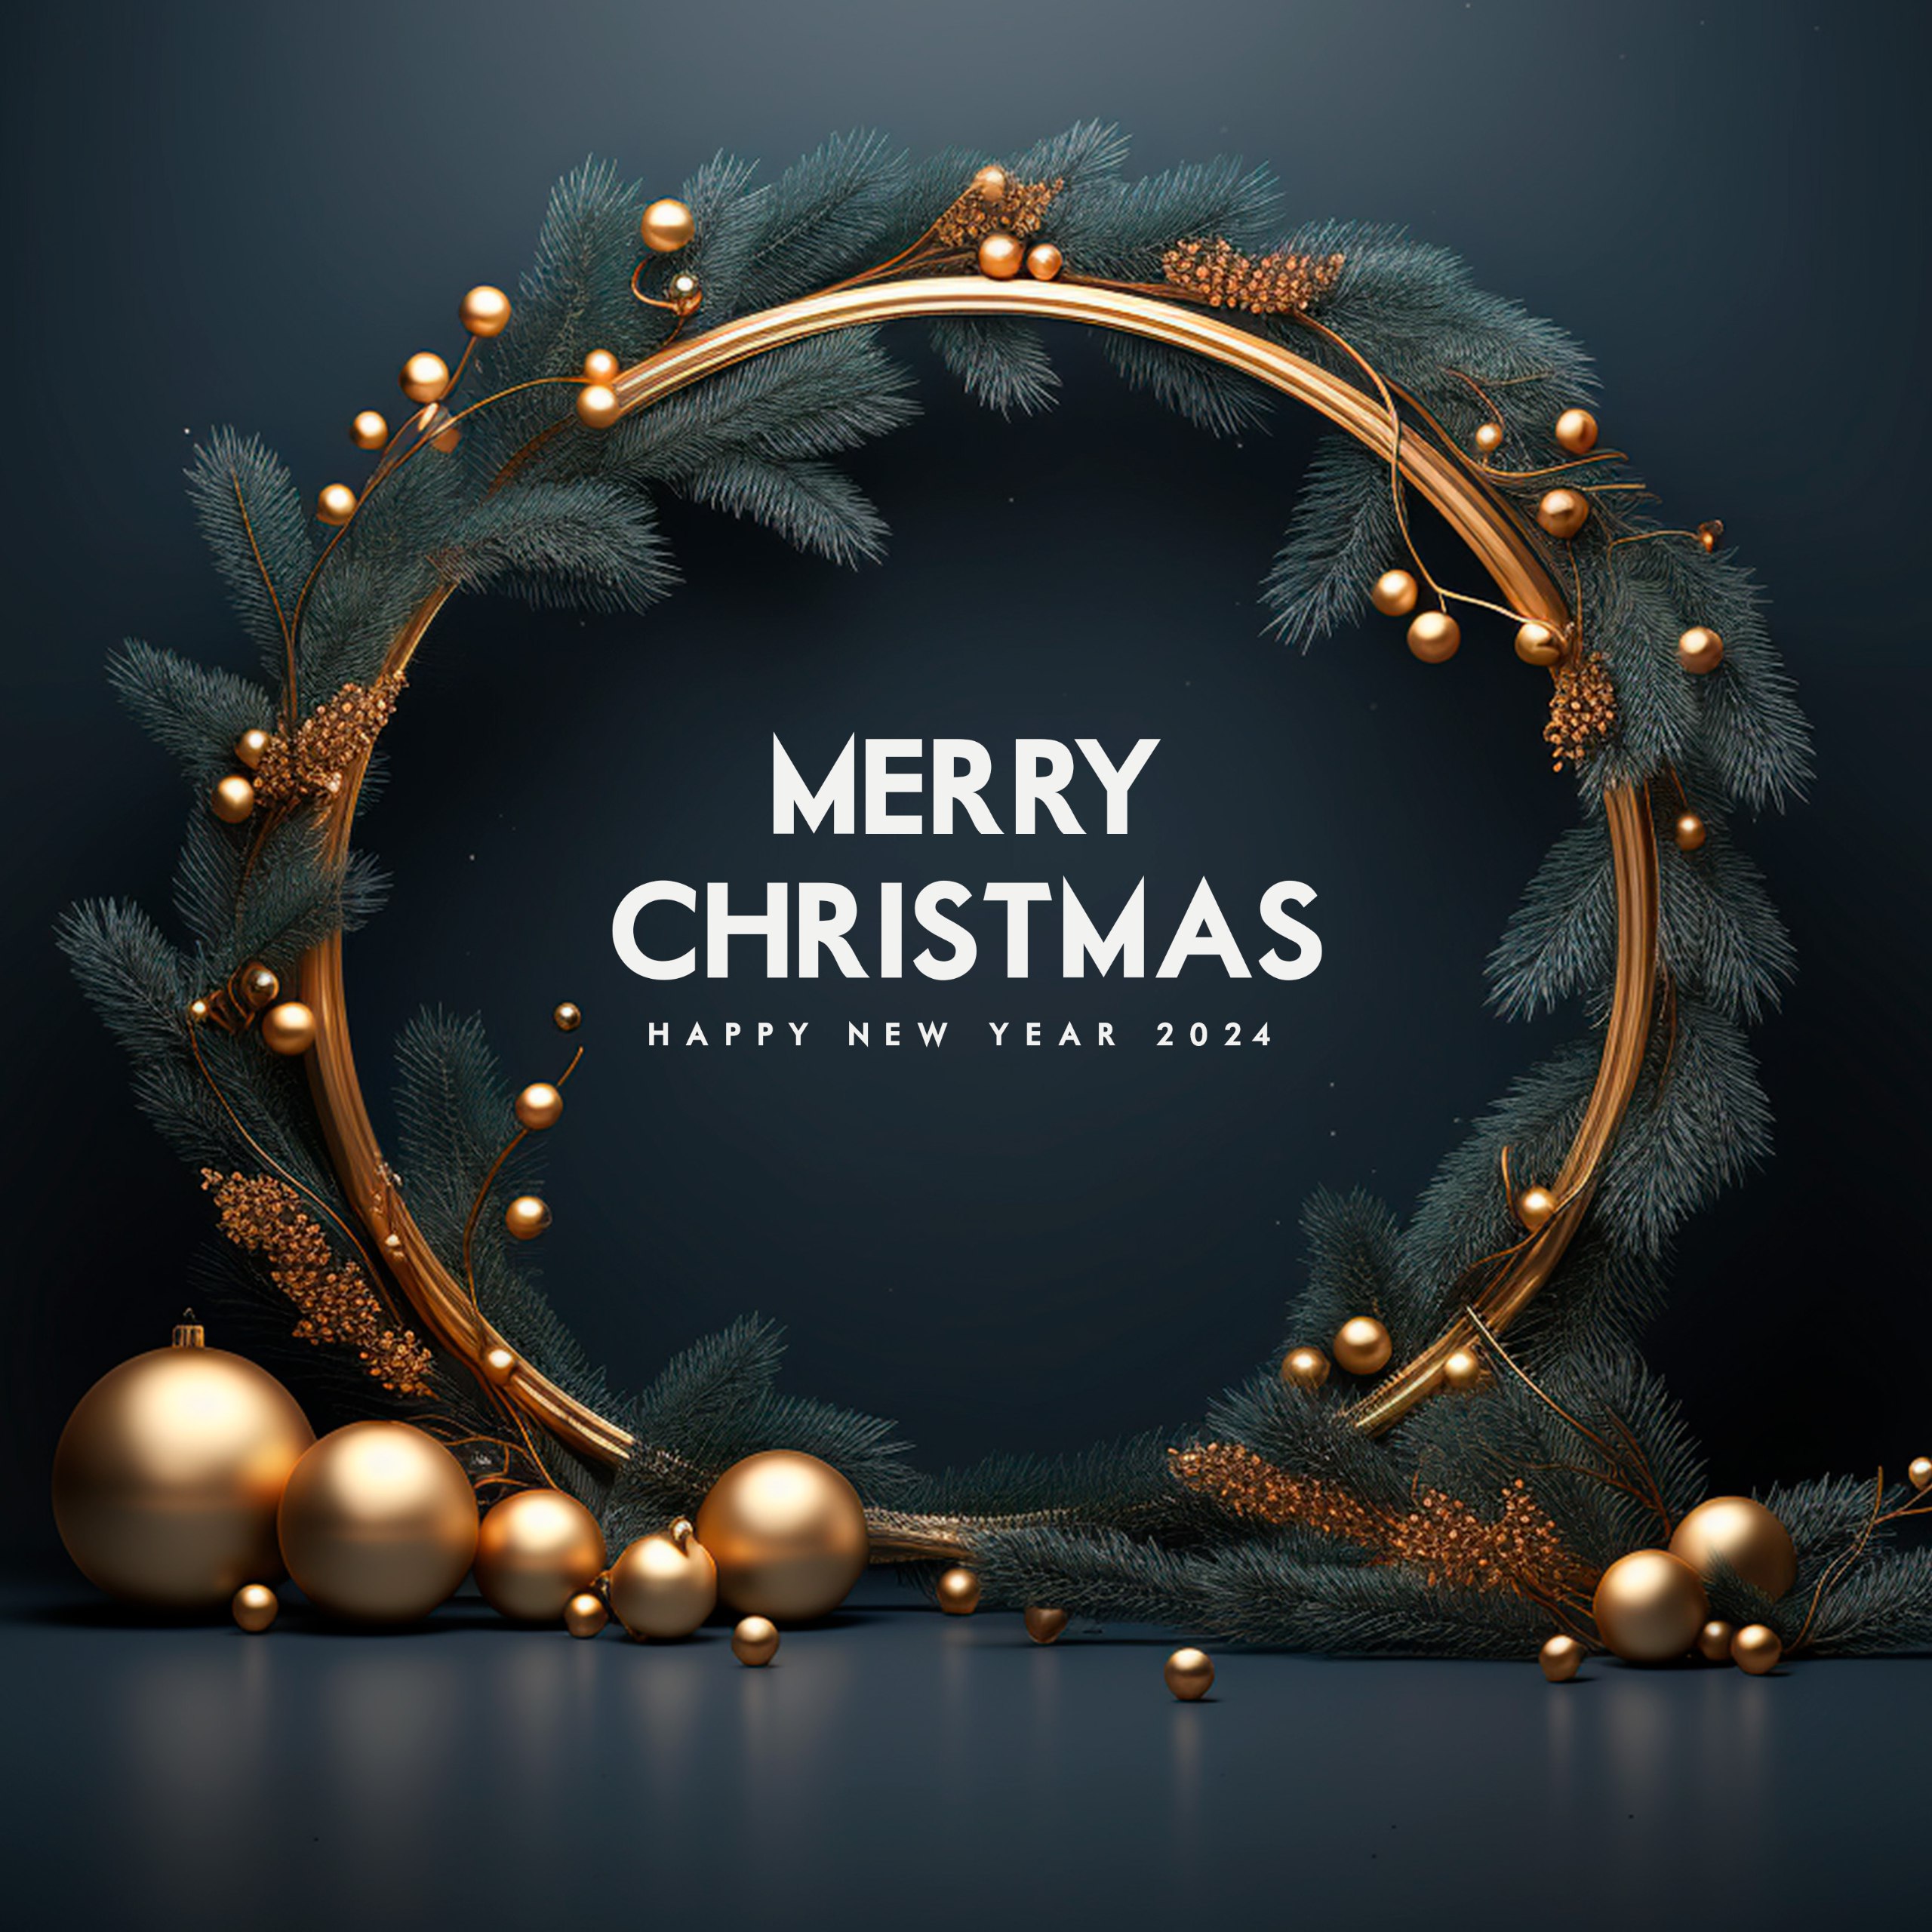 We wish you a Merry Christmas! Как поздравить коллег и бизнес-партнеров